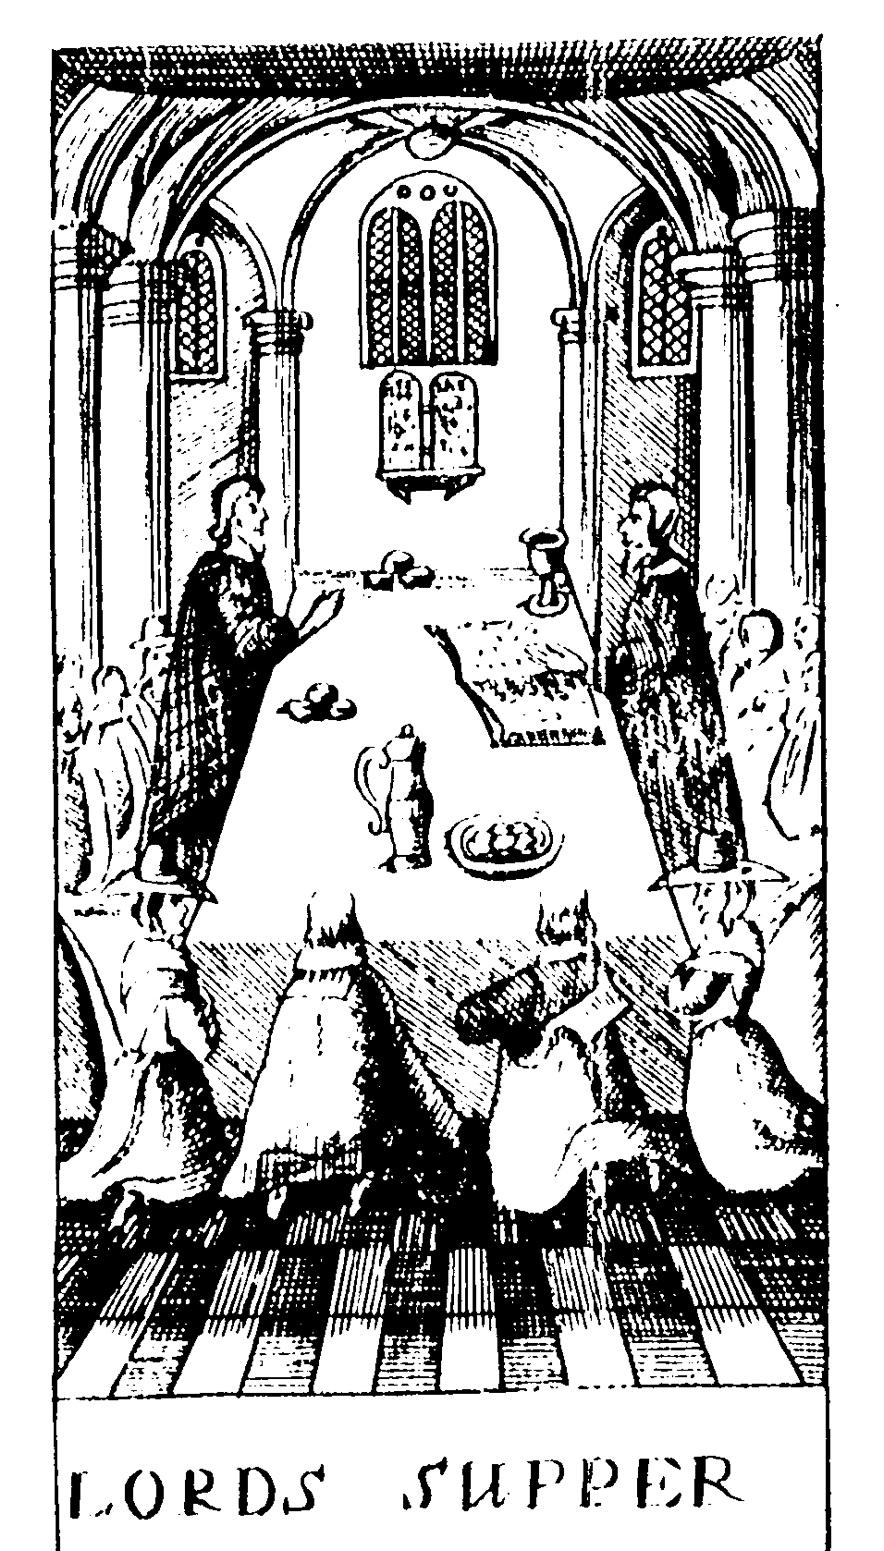 Příloha č. 11 Ilustrace Večeře Páně z knihy katechismu vydané roku 1674. Stejný způsob slavení eucharistie se předpokládá pro období vlády Eduarda VI.